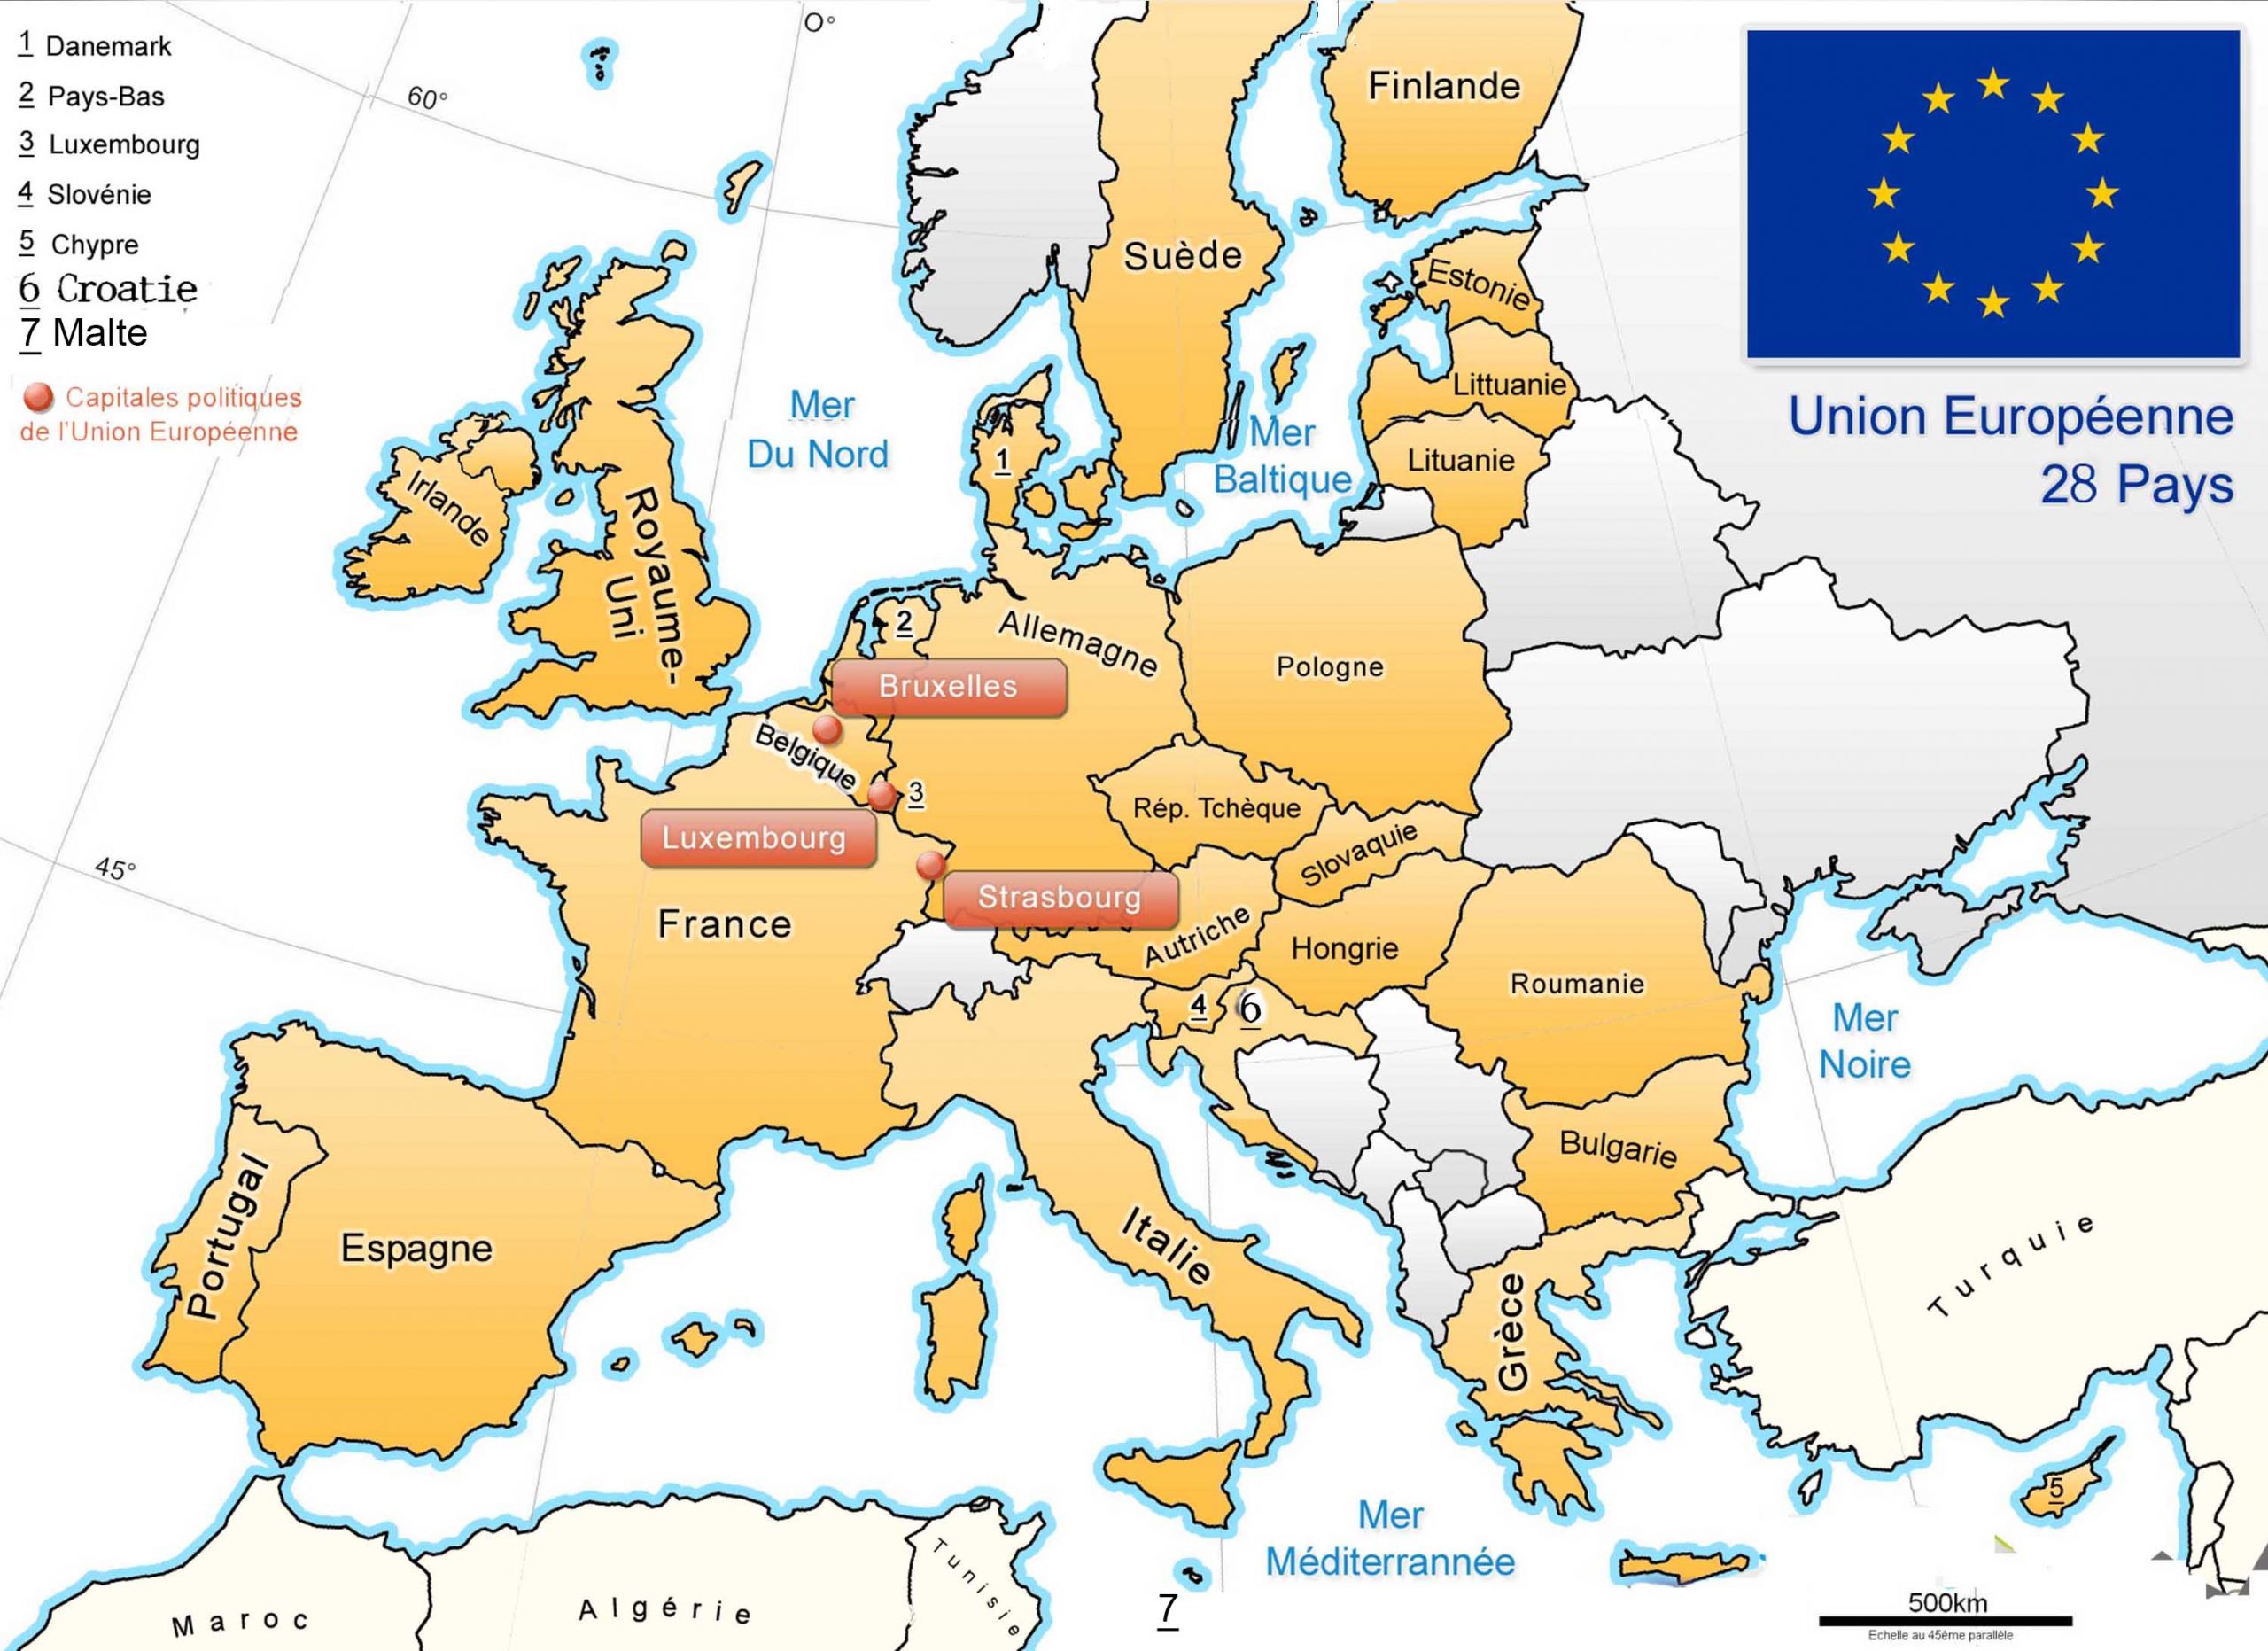 Apprendre À Placer Les Pays De L&amp;#039; Union Européenne - Le Blog tout Les Capitales De L Union Européenne 